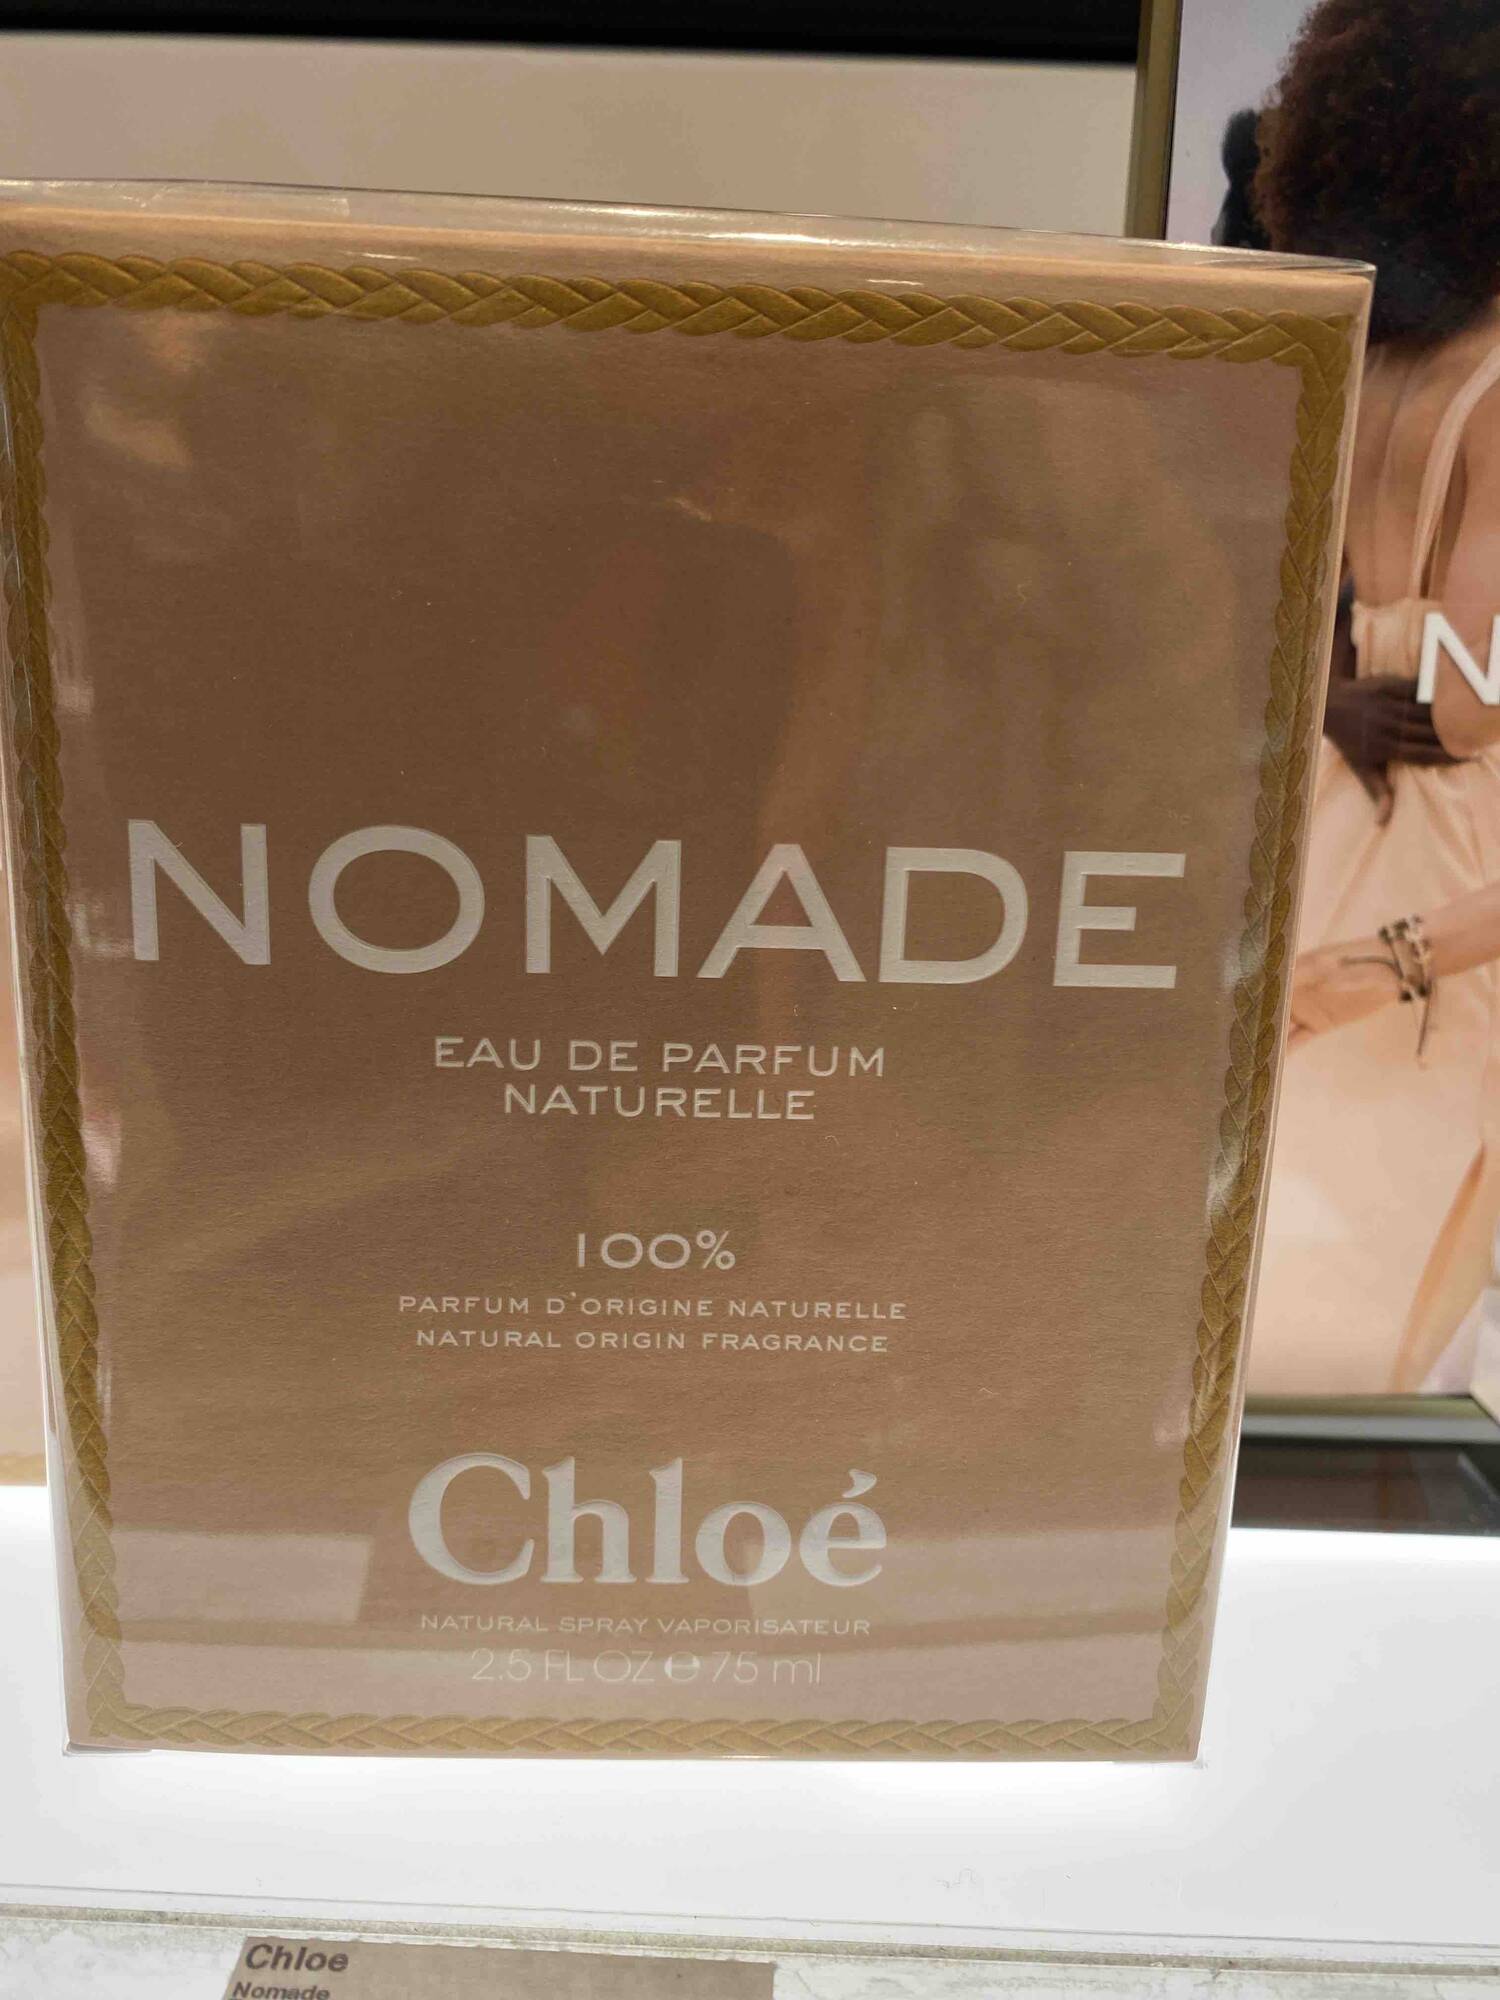 CHLOÉ - Nomade - Eau de parfum naturelle